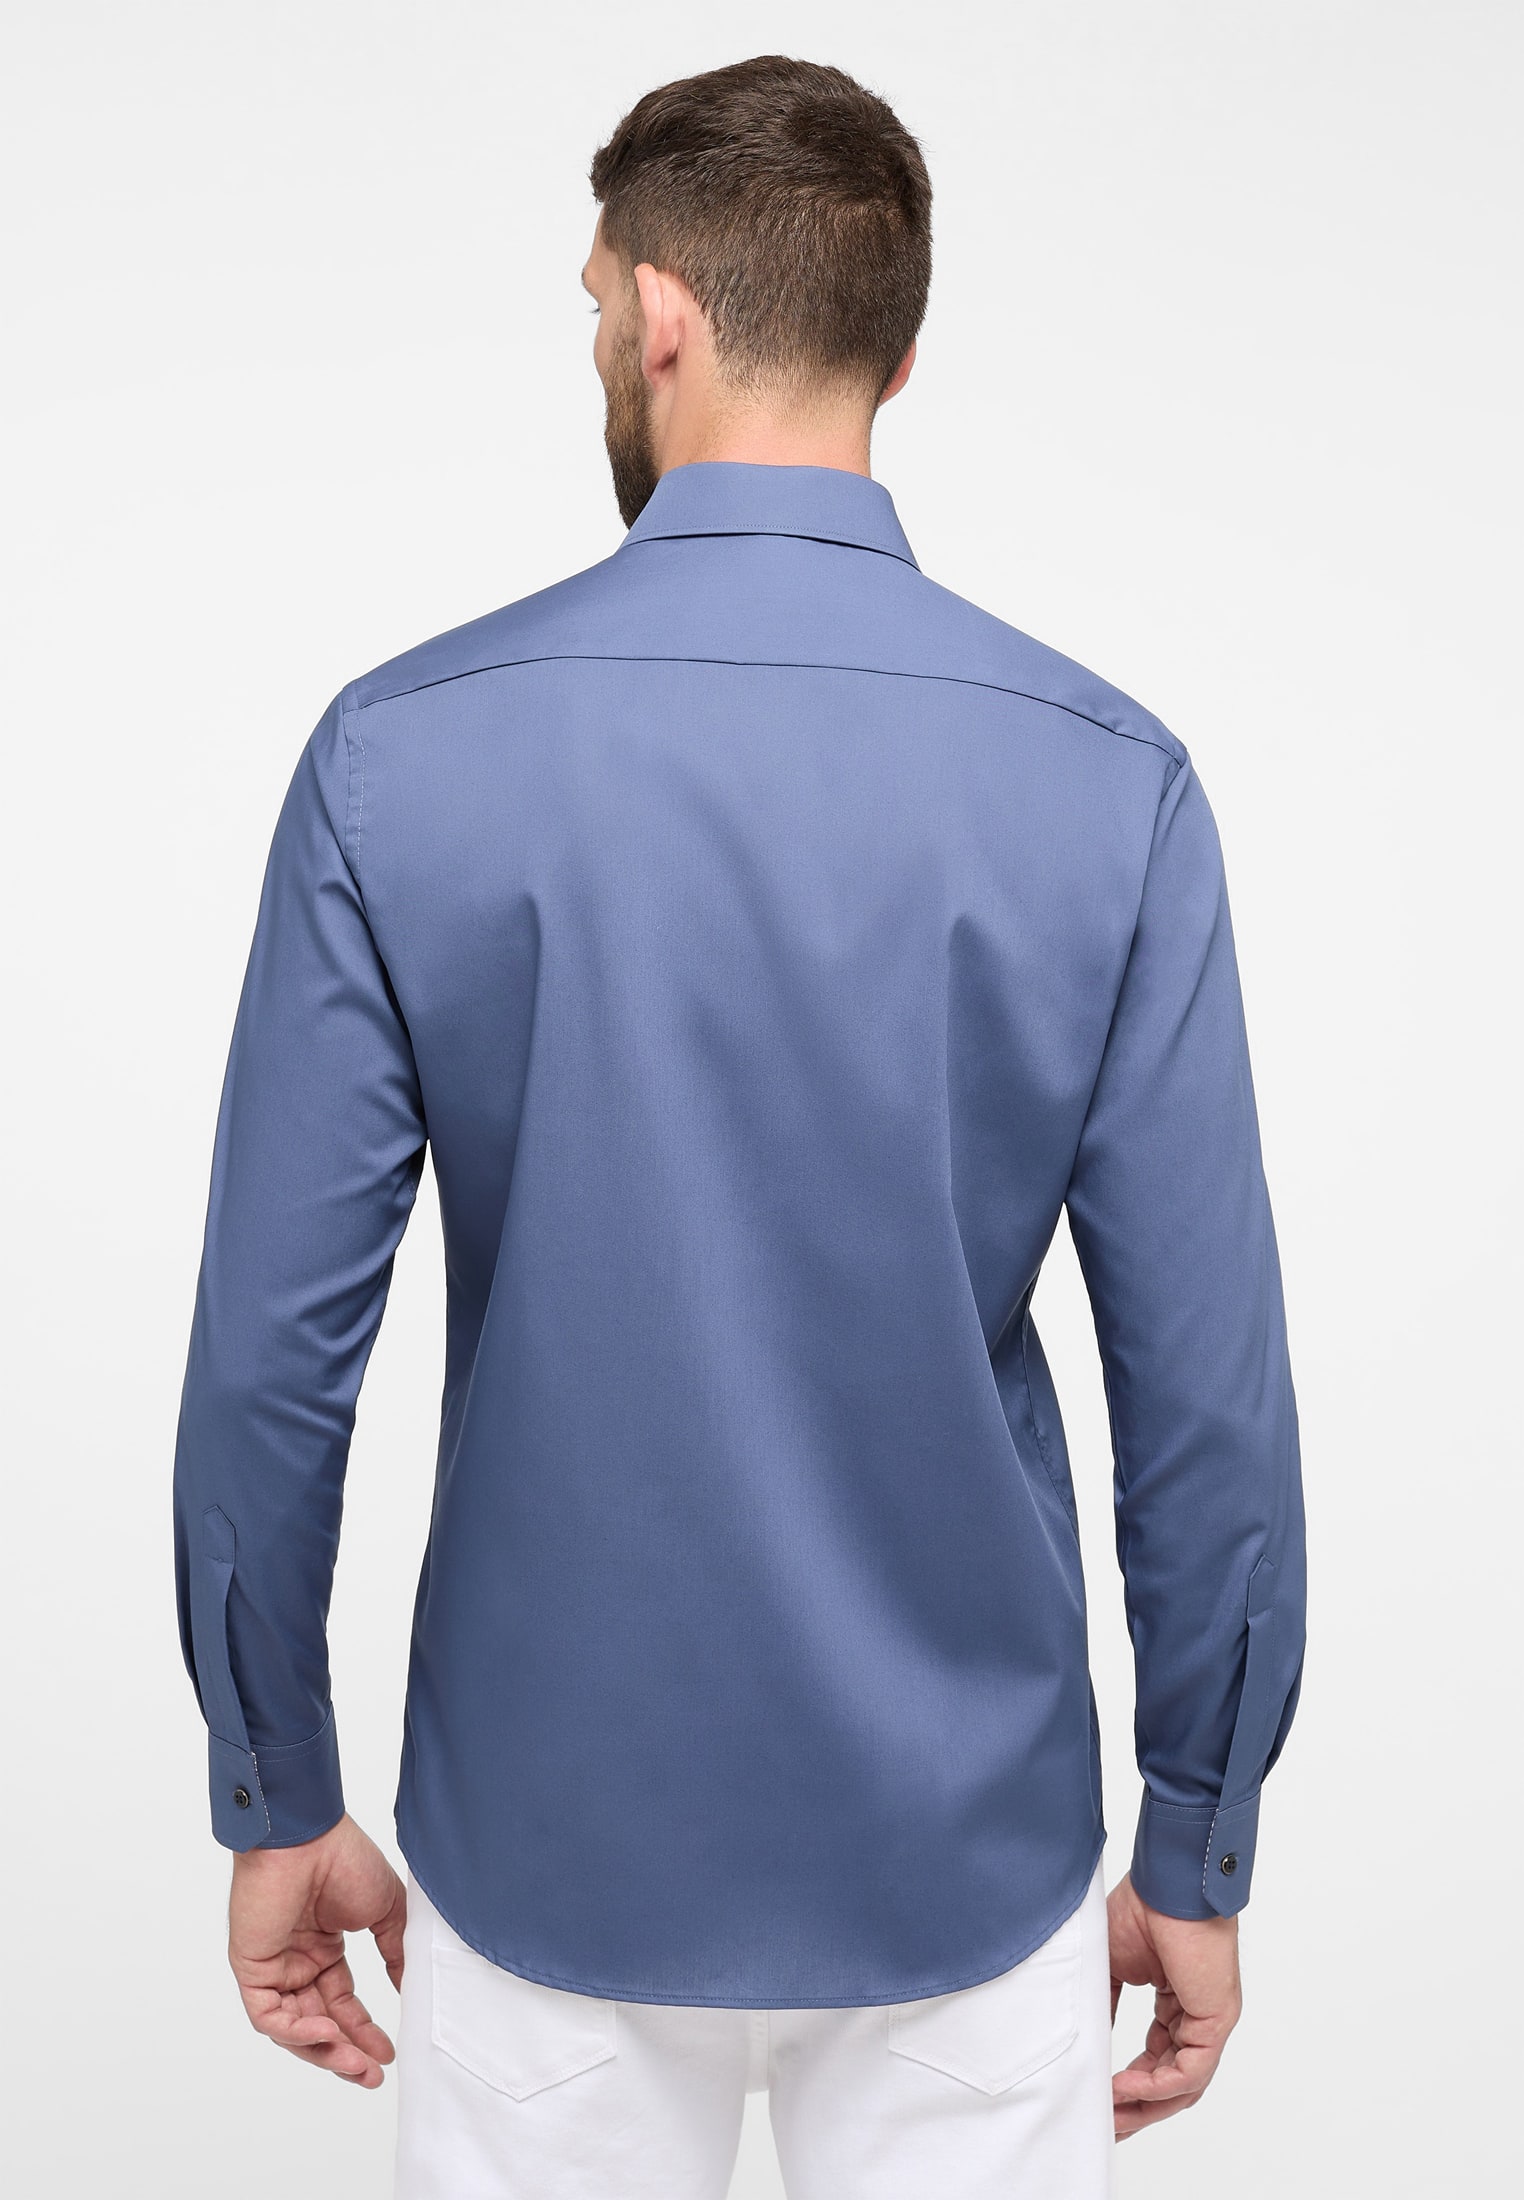 MODERN FIT Original Shirt in rauchblau unifarben | rauchblau | 40 | Langarm  | 1SH11722-01-62-40-1/1 | Einstecktücher